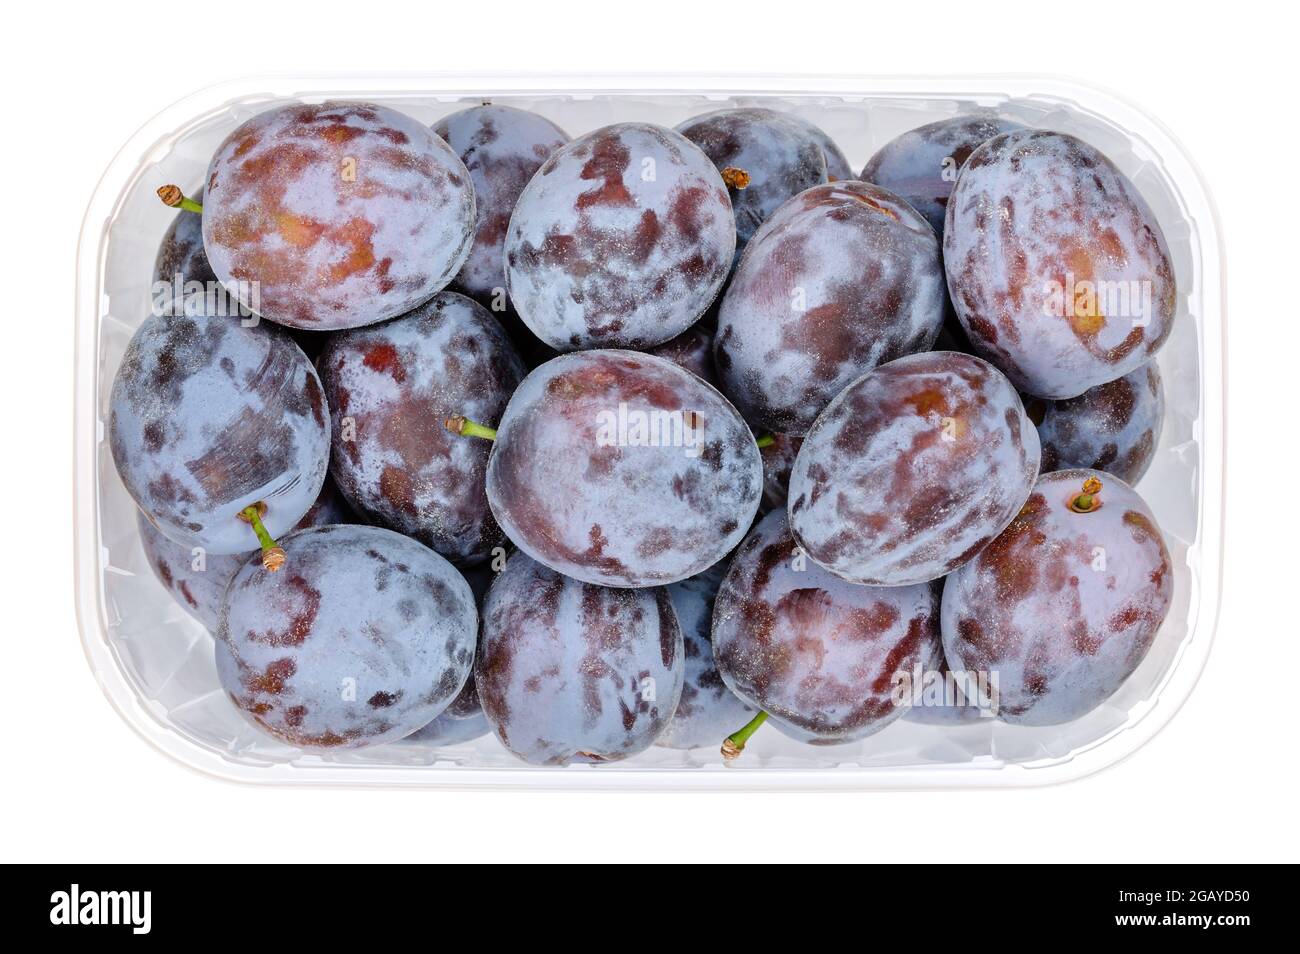 Pruneaux mûrs dans un récipient en plastique transparent. Fruit frais et une sous-espèce de Prunus domestica, un fruit de freestone, également appelé prune européenne. Banque D'Images